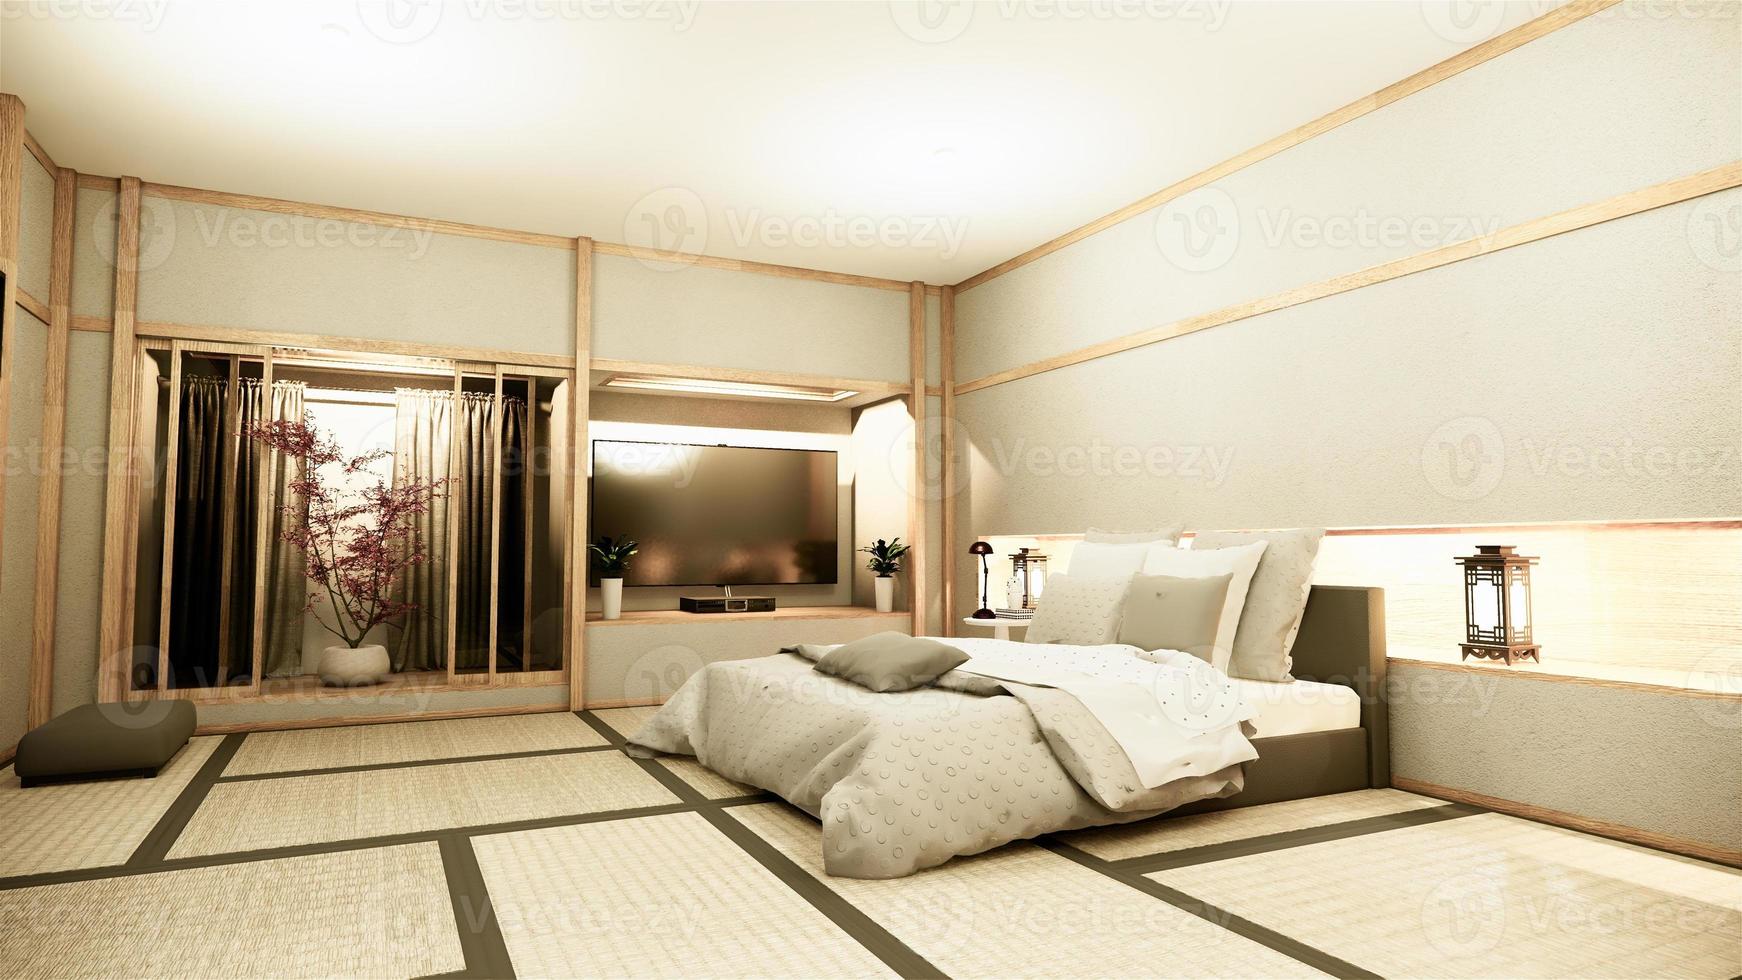 dormitorio tranquilo zen moderno. Dormitorio de estilo japonés con estante, diseño de pared, luz oculta y decoración, estilo nihon, representación 3D. foto